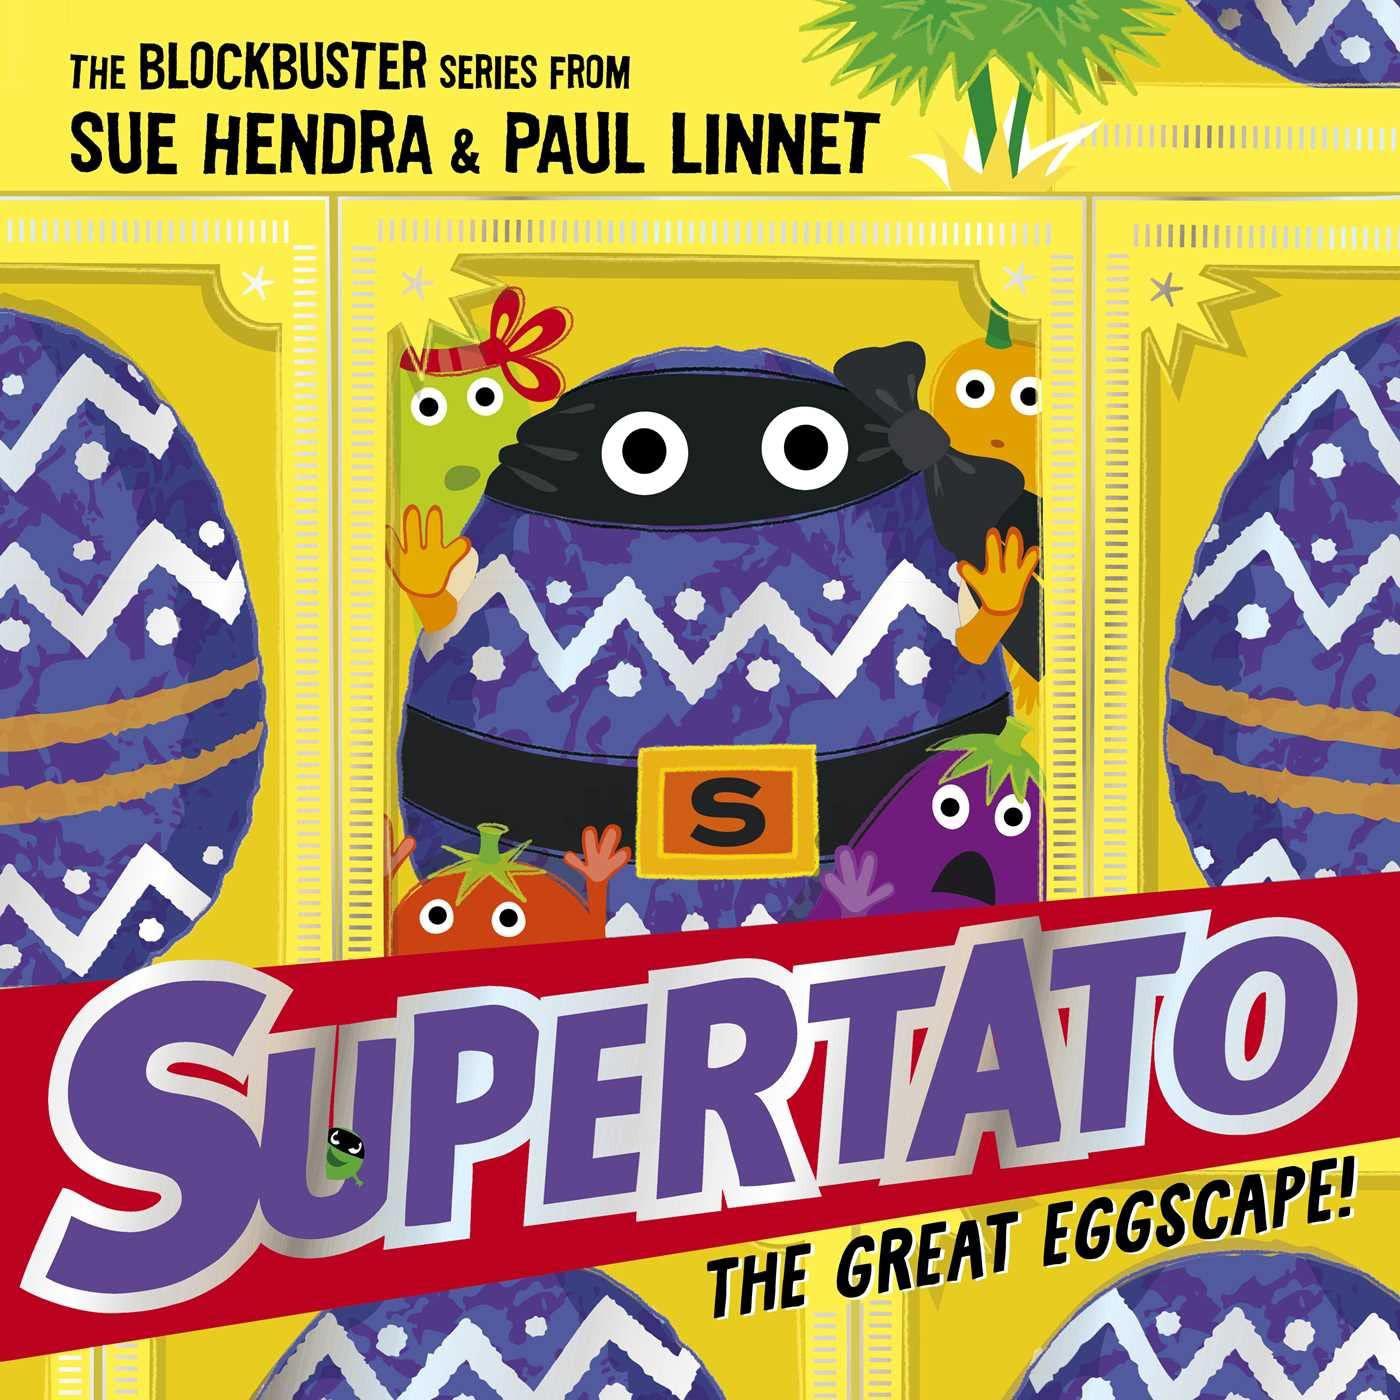 Supertato: The Great Eggscape!: A Brand-New Adventure In The Blockbuster Series! - Sue Hendra & Paul Linnet